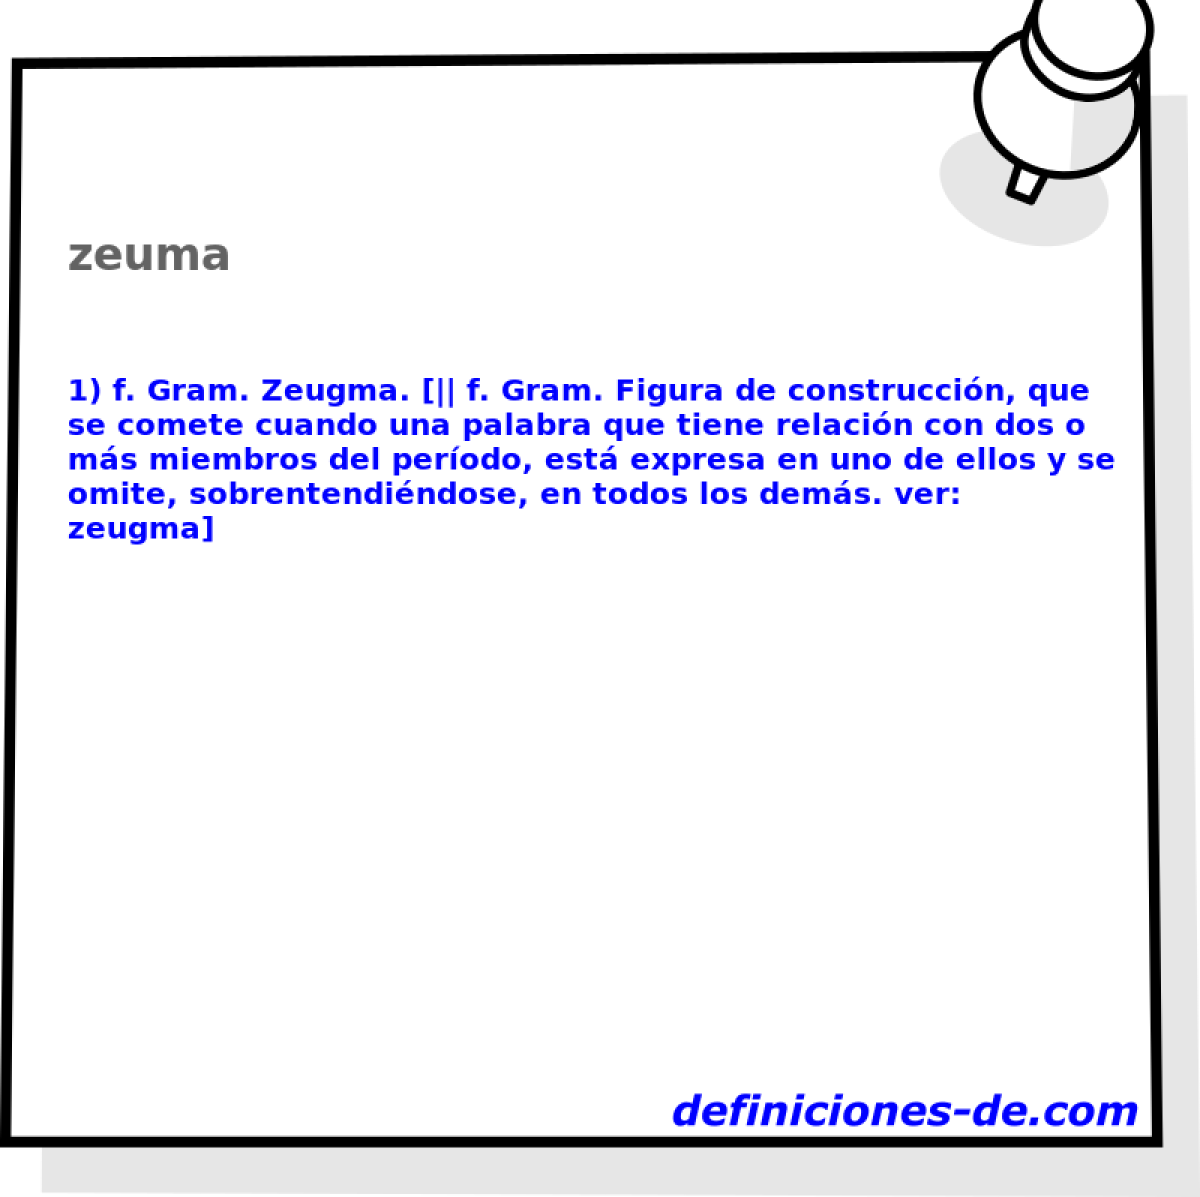 zeuma 